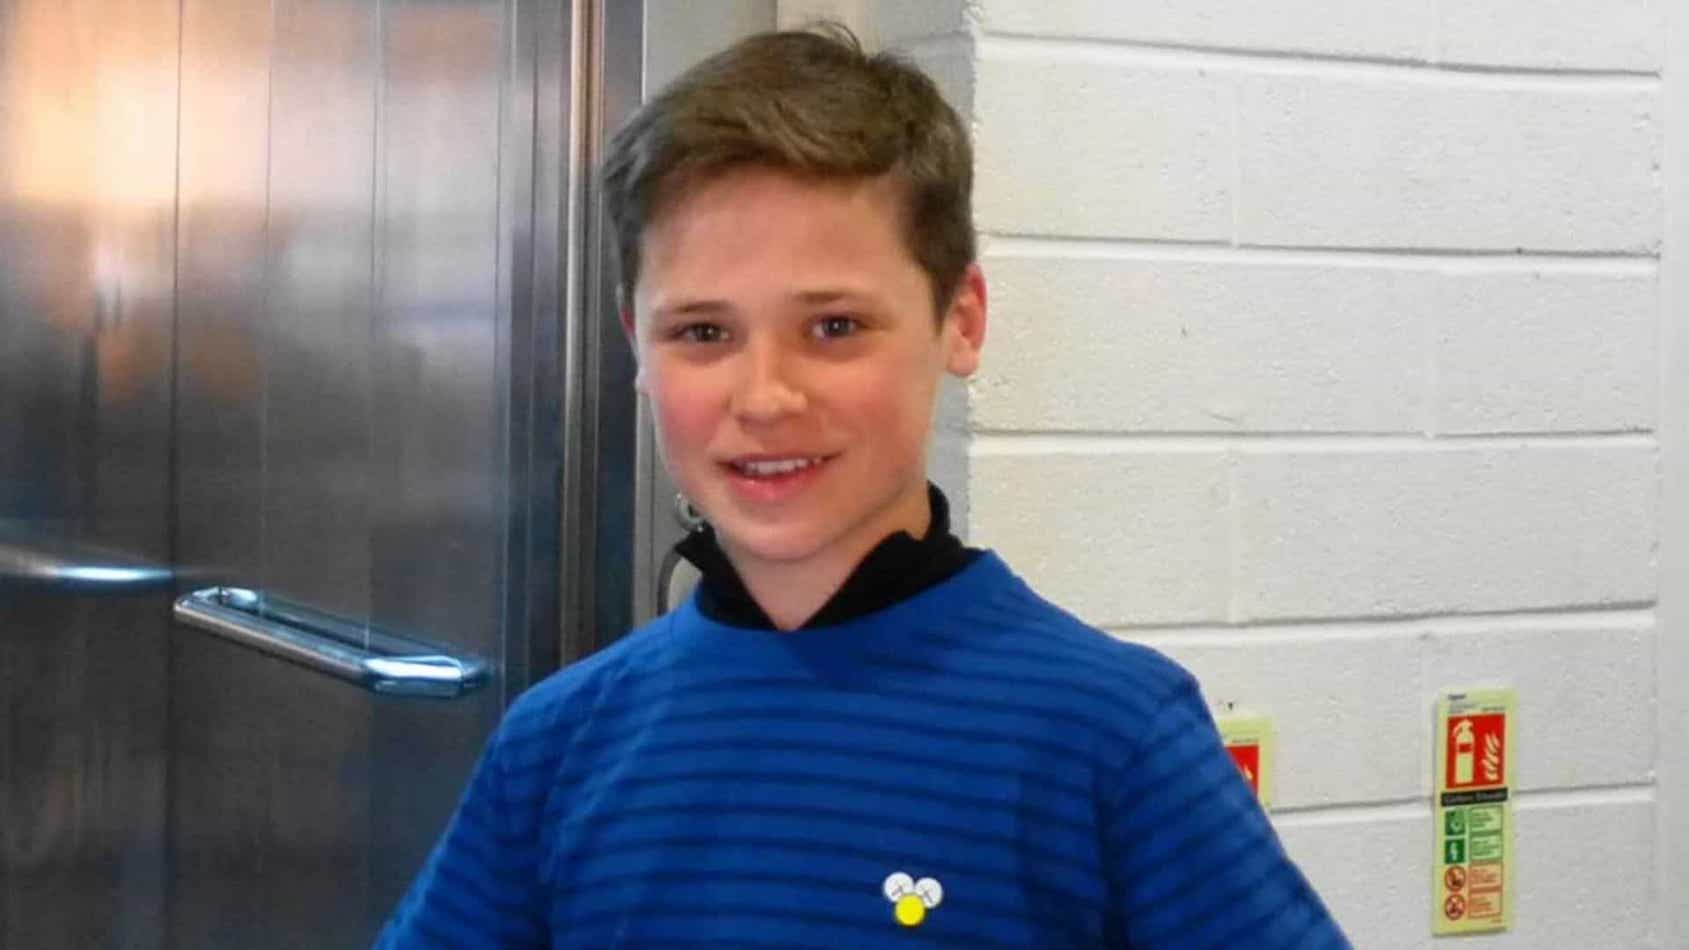 Jack Burns Ator De 14 Anos Encontrado Morto Em Casa